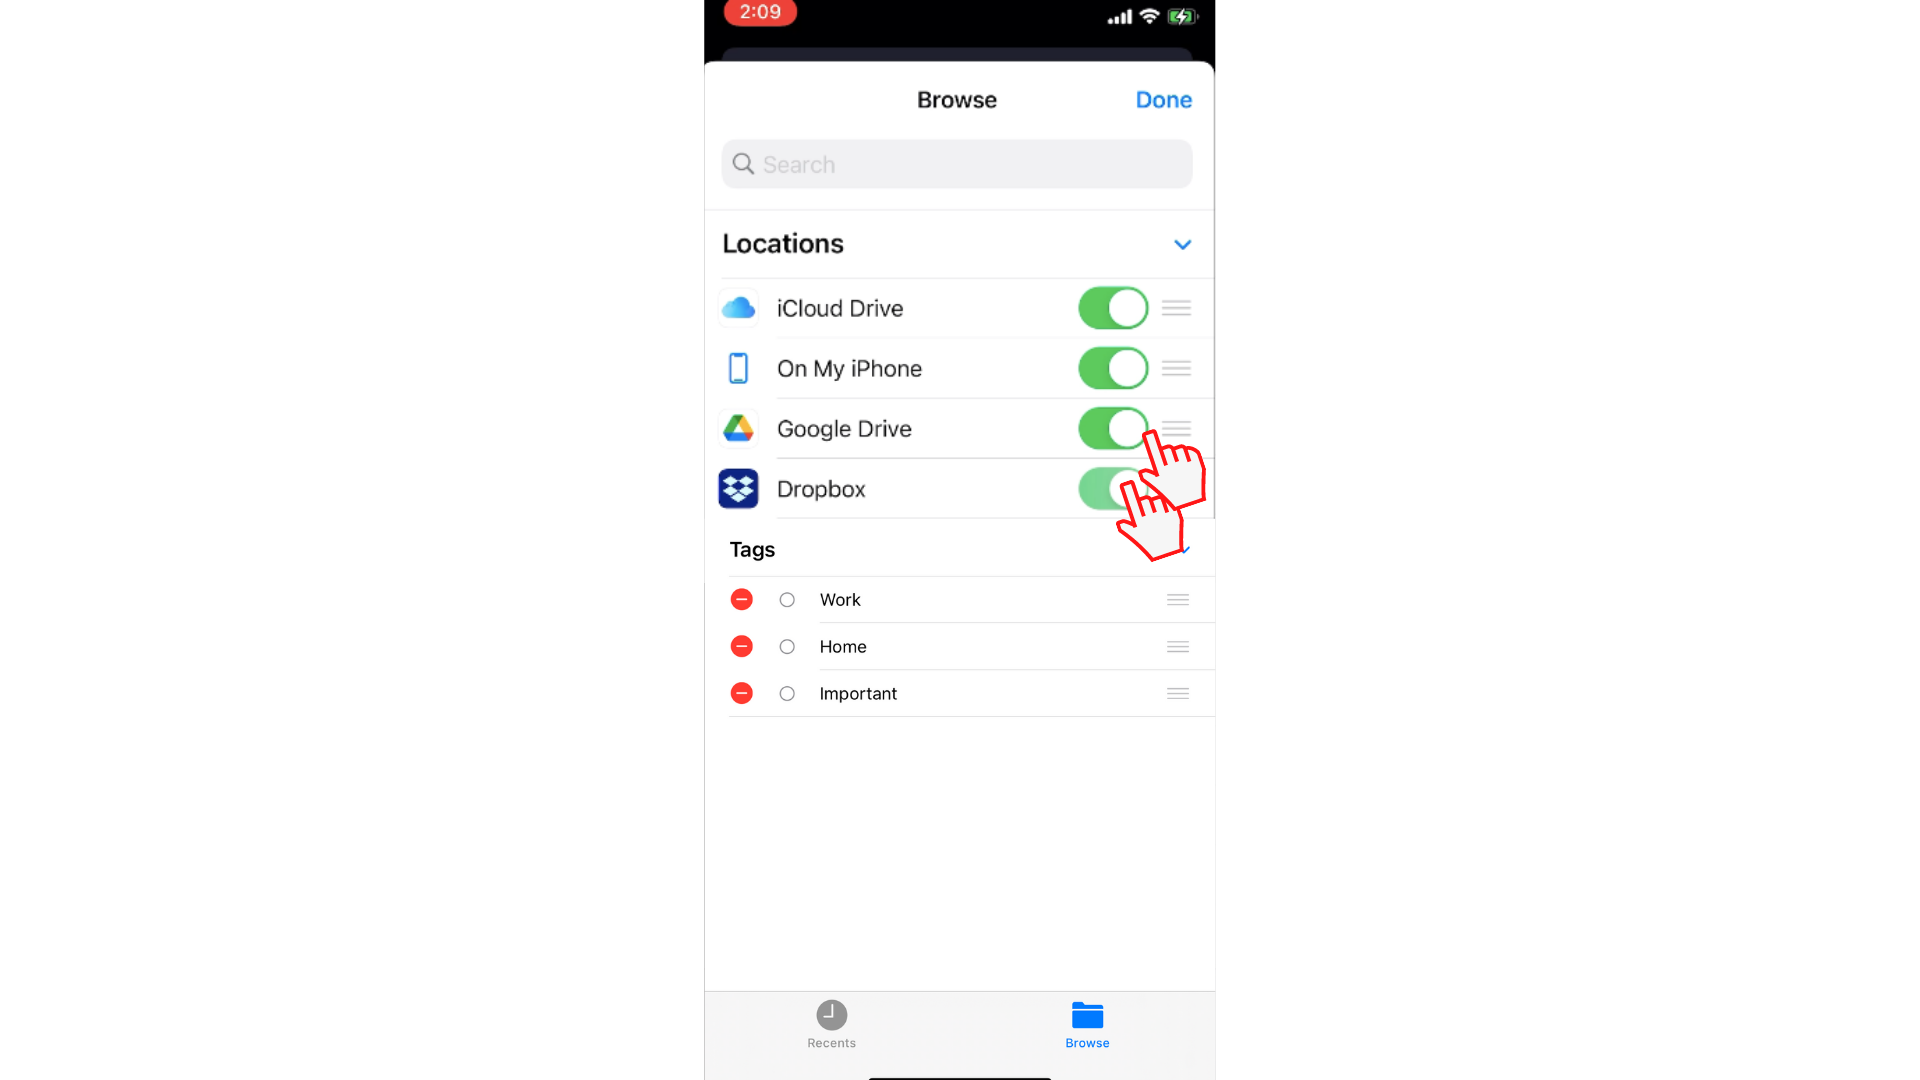 Uporabnik pomiga preklopni gumb, da omogoči dostop do storitev Dropbox in Google Drive